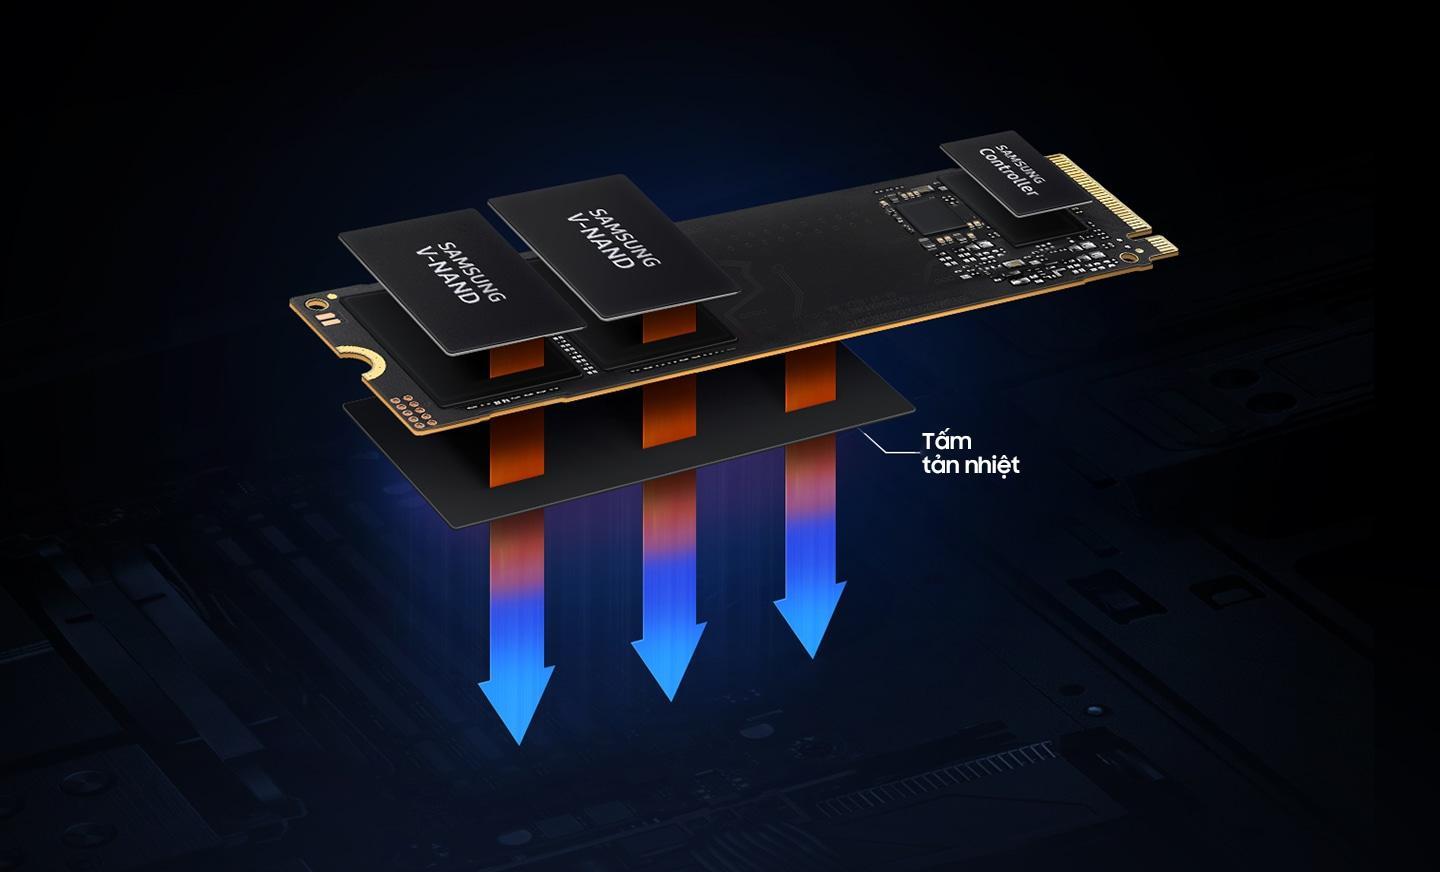 Nhiệt được tạo ra từ V-NAND và Bộ điều khiển, đây là những thành phần chính tạo nên SSD. Tấm tản nhiệt kiểm soát nhiệt và duy trì hiệu suất của SSD.